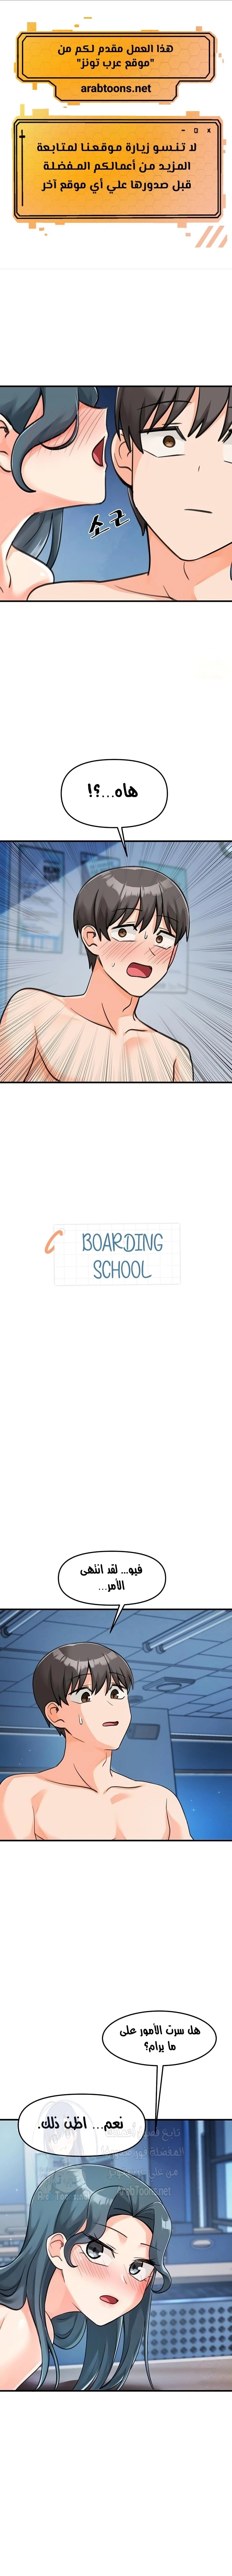 Boarding School - 45 - 65f1416a8f4d7.webp